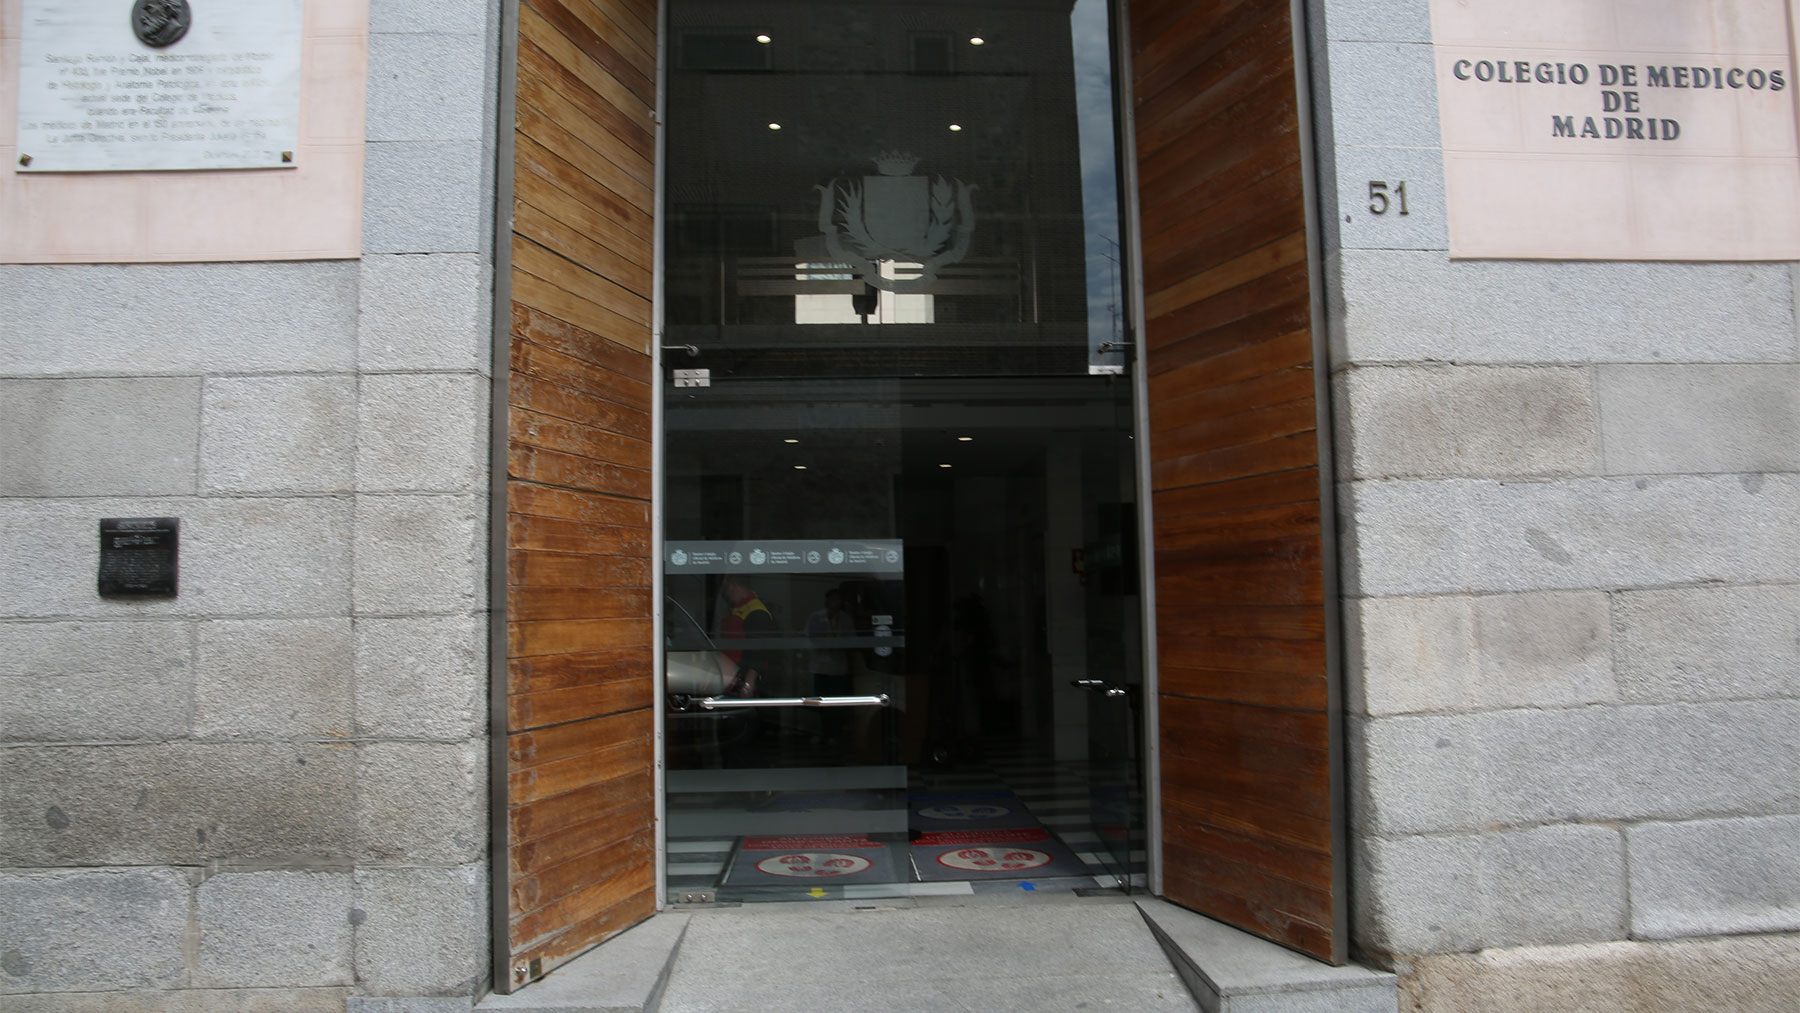 El ICOMEM está situado en la Calle Santa Isabel de Madrid.